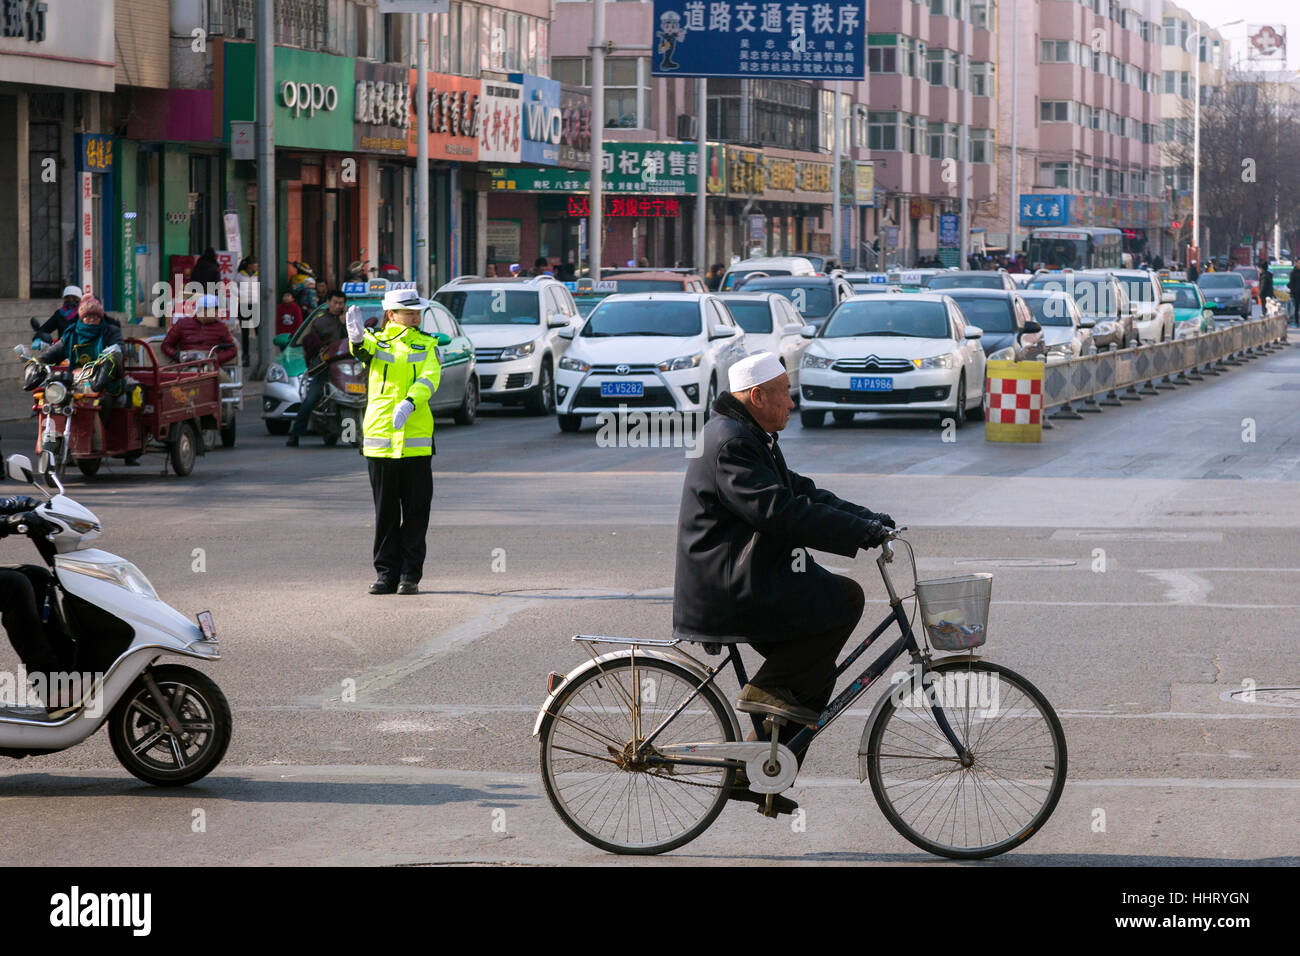 Contrôle de police du trafic à la jonction de route, Wuzhong, province de Ningxia, Chine Banque D'Images